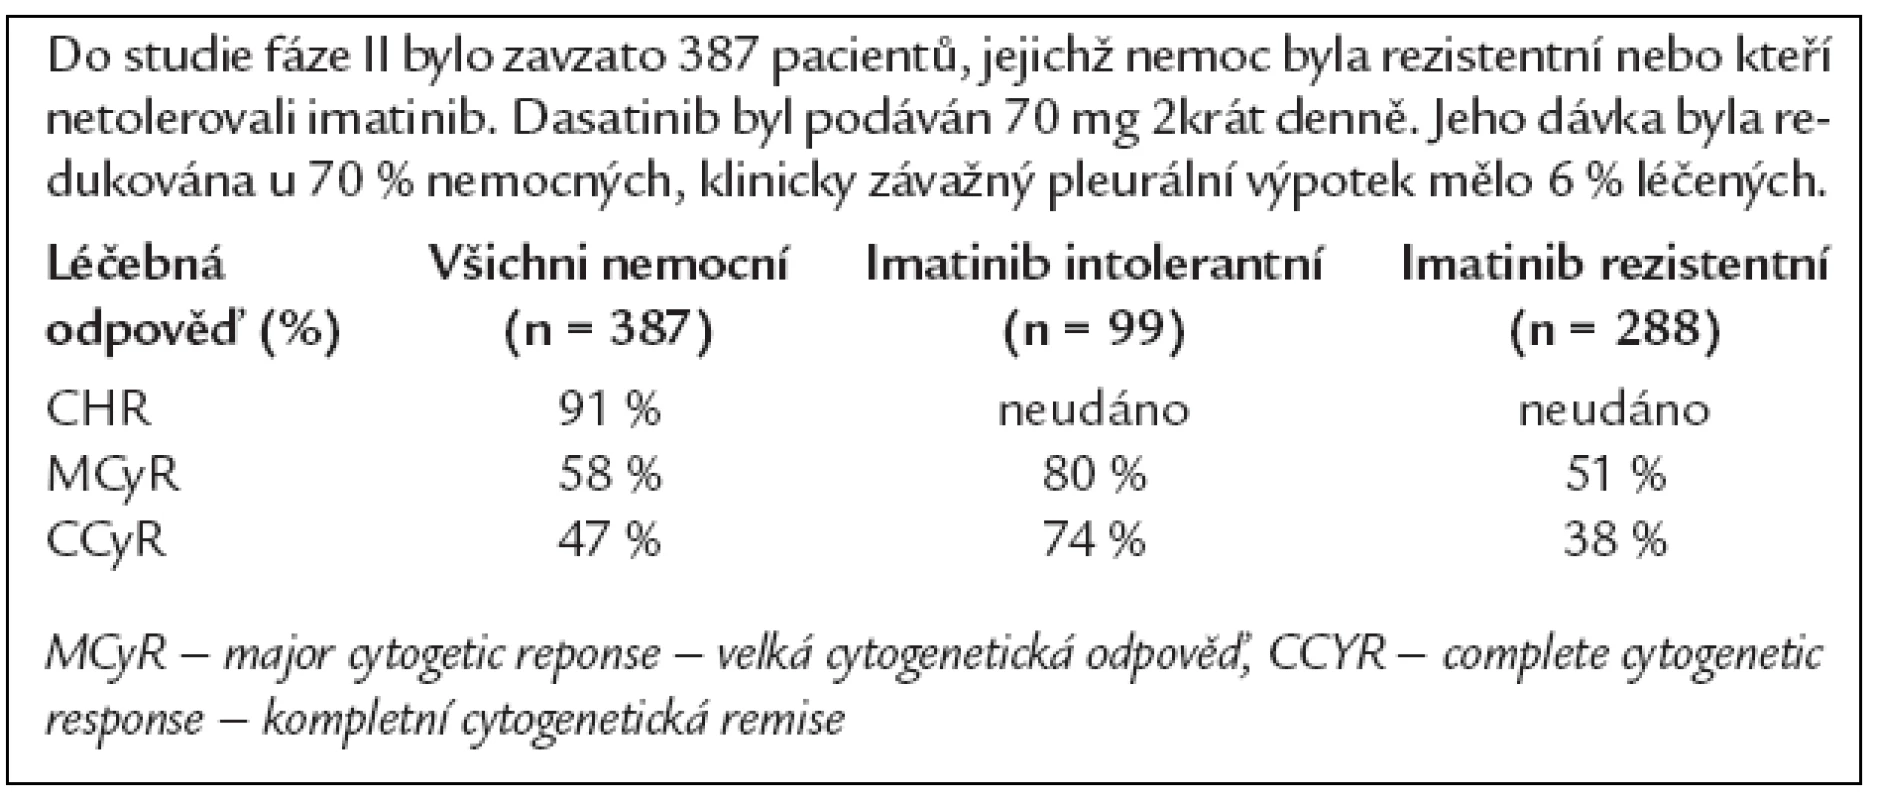 Výsledky fáze II studie s dasatiniben u pacientů v chronické fázi CML, jejichž nemoc nereagovala na imatinib, nebo kteří jej netolerovali (Baccarani M, et al. ASH 2006. Abstract 164).